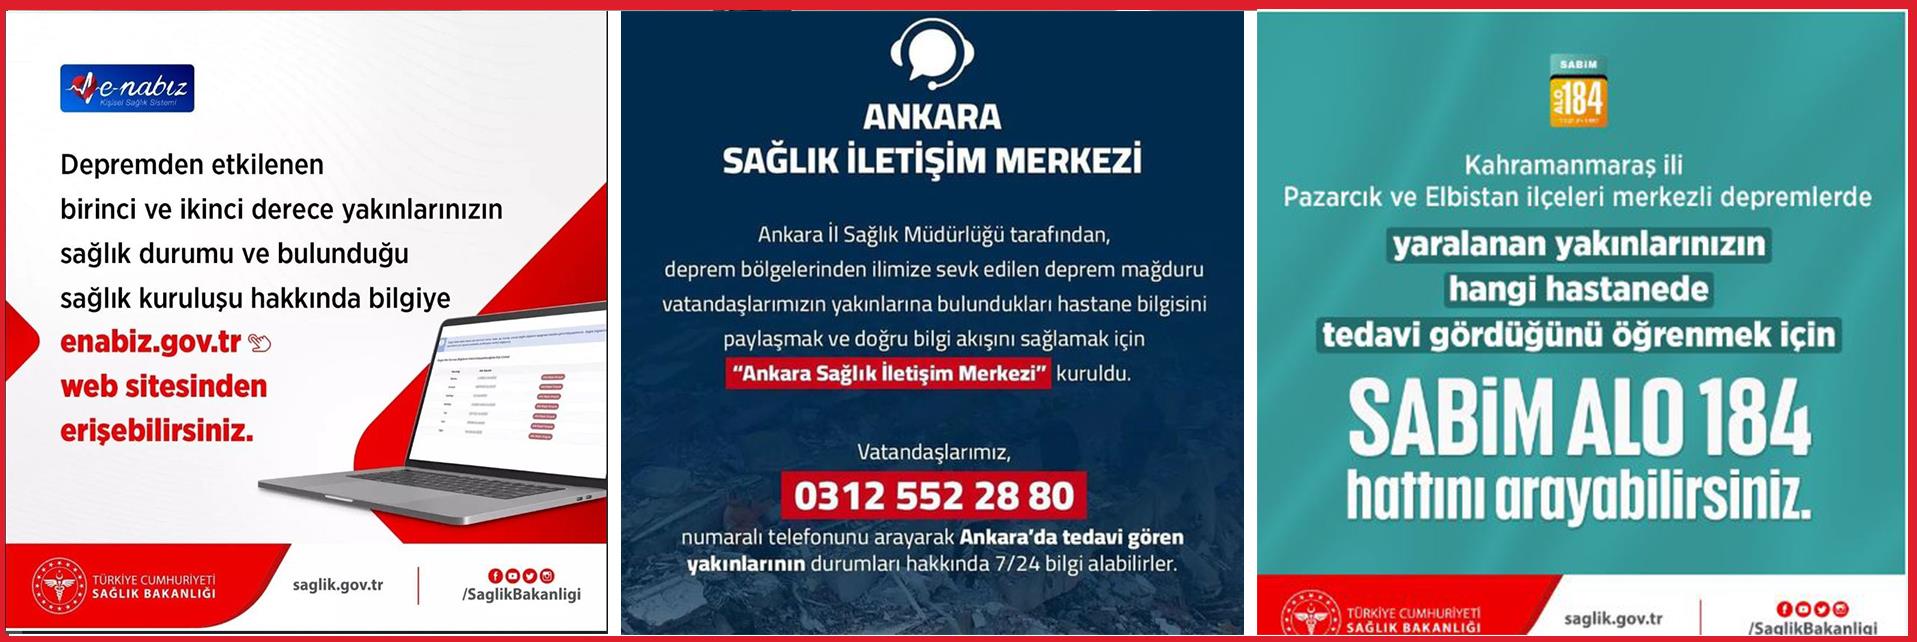 Deprem Mağduru Vatandaşlarımız İçin “Ankara Sağlık İletişim Merkezi” kuruldu. 